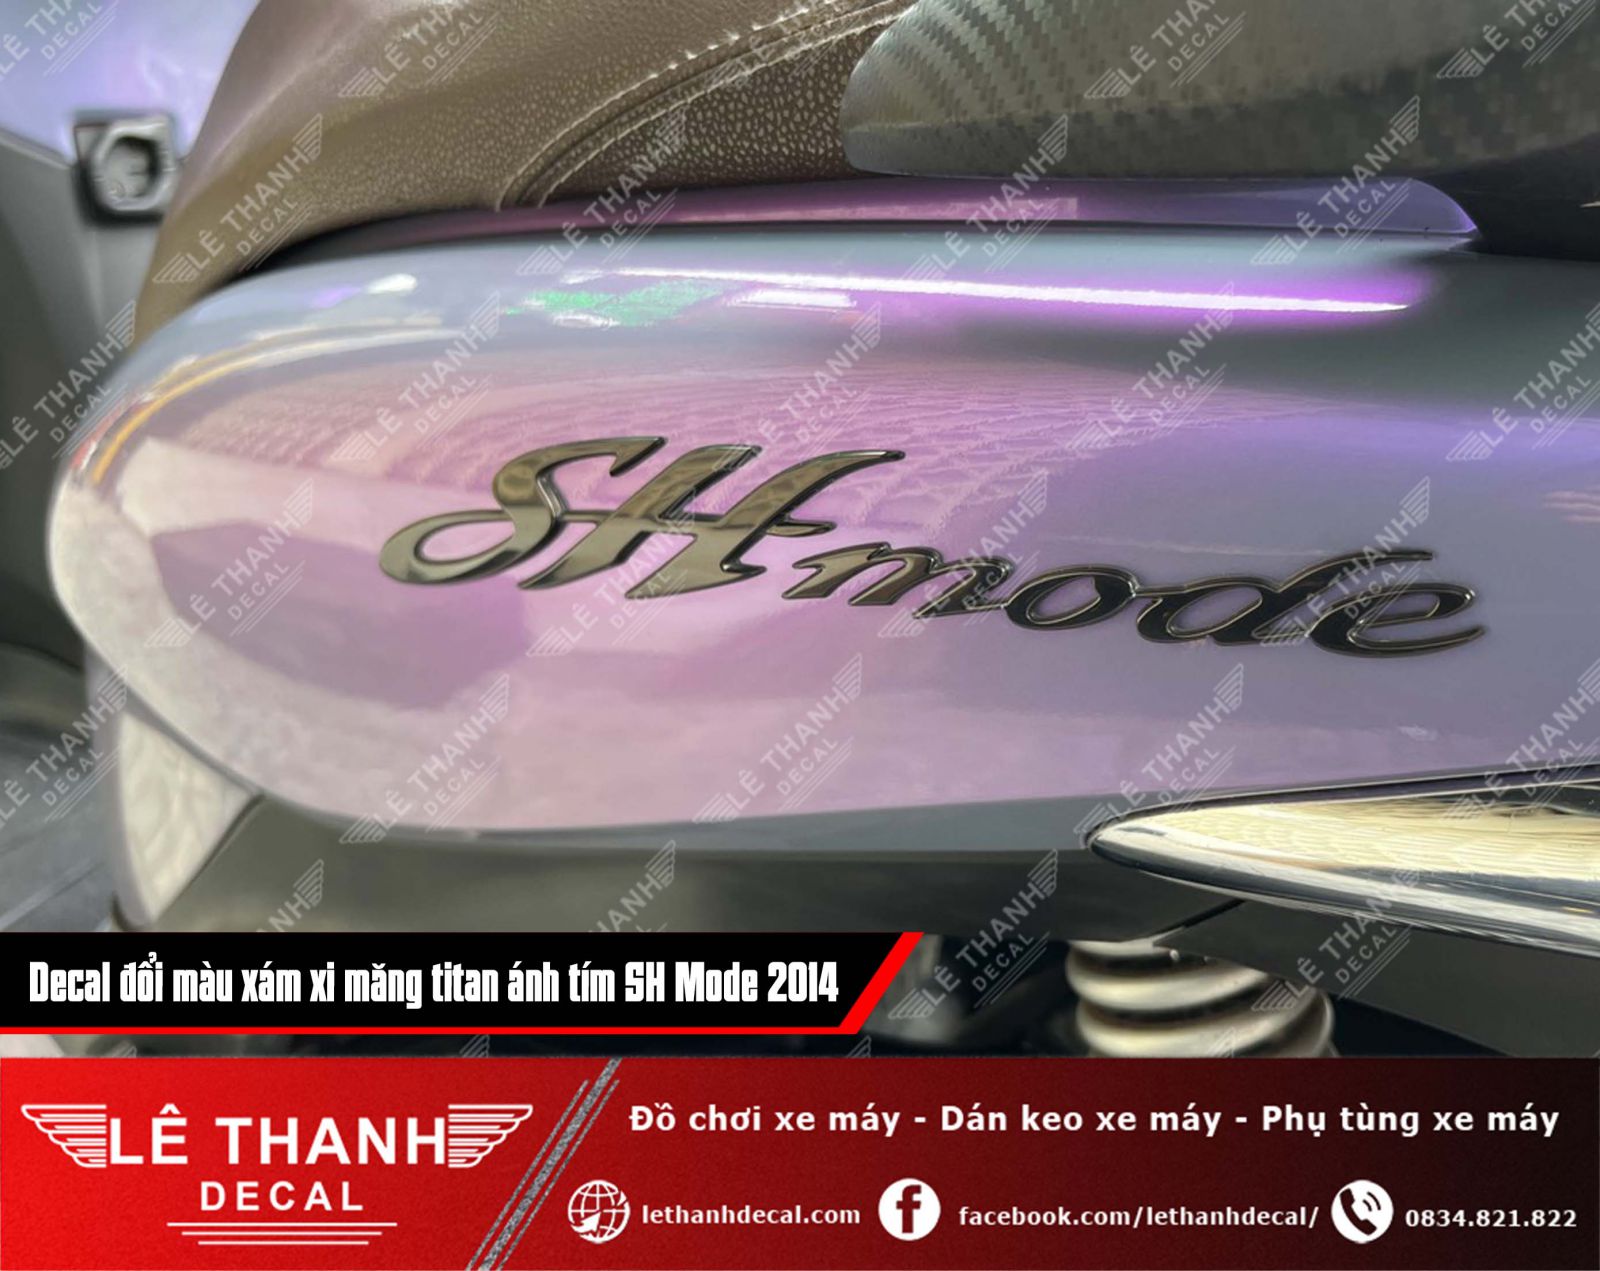 Dán decal đổi màu xám xi măng titan ánh tím cho SH Mode 2014